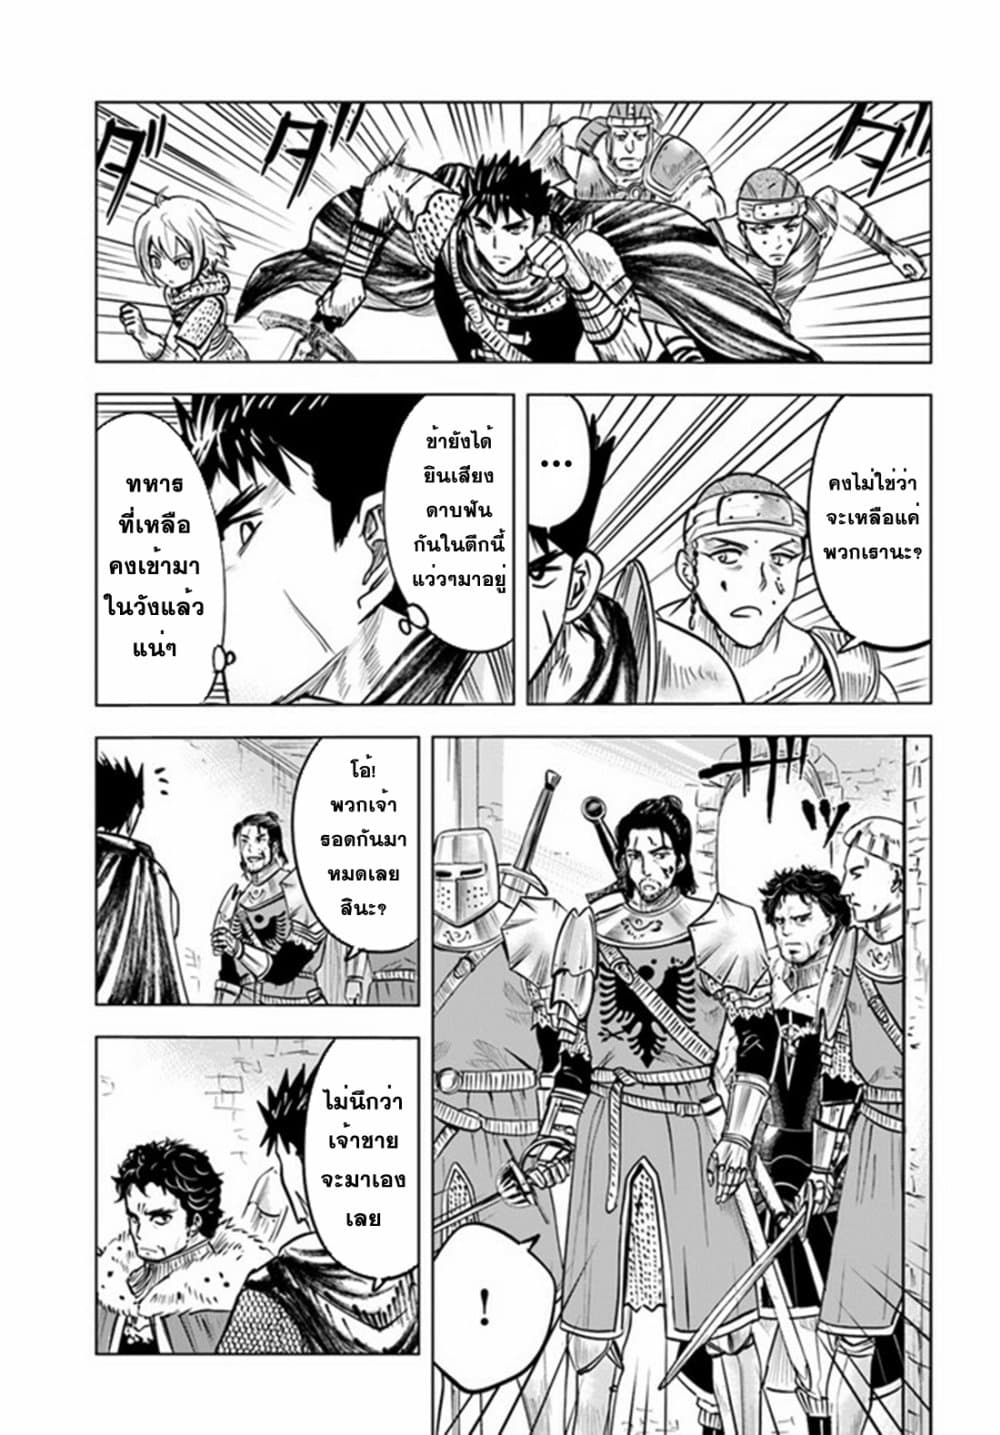 Oukoku e Tsuzuku Michi dorei Kenshi no Nariagari Eiyutan (Haaremu Raifu) - Road to the Kingdom Slave Swordsman the Rise of Heroes - Harem Life 28-28